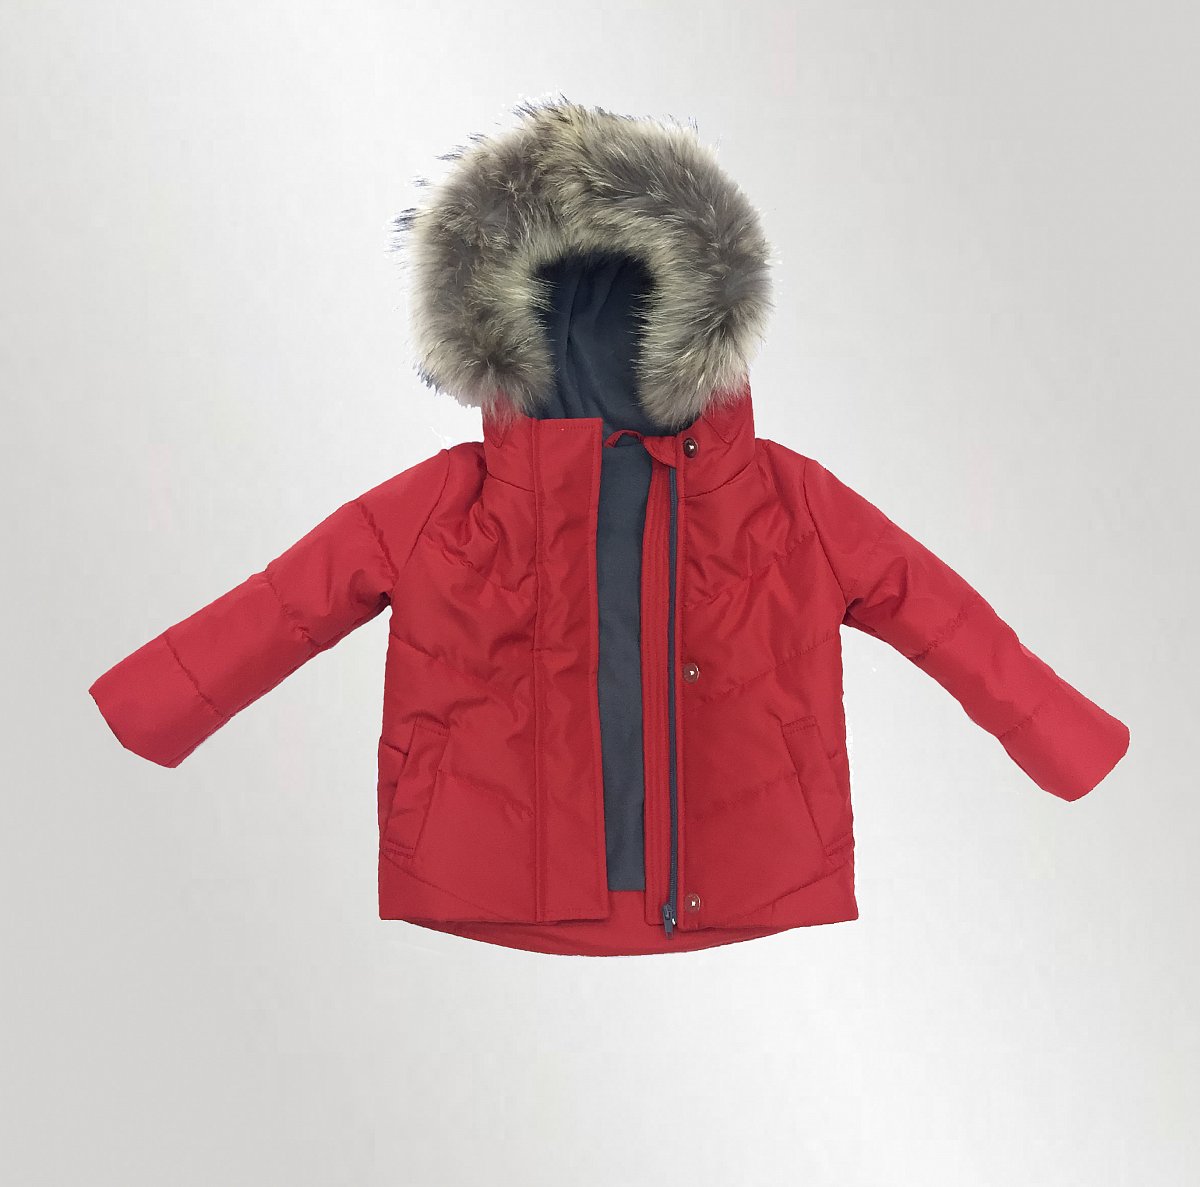 Пошив детских курток - пример модели детская утепленная куртка